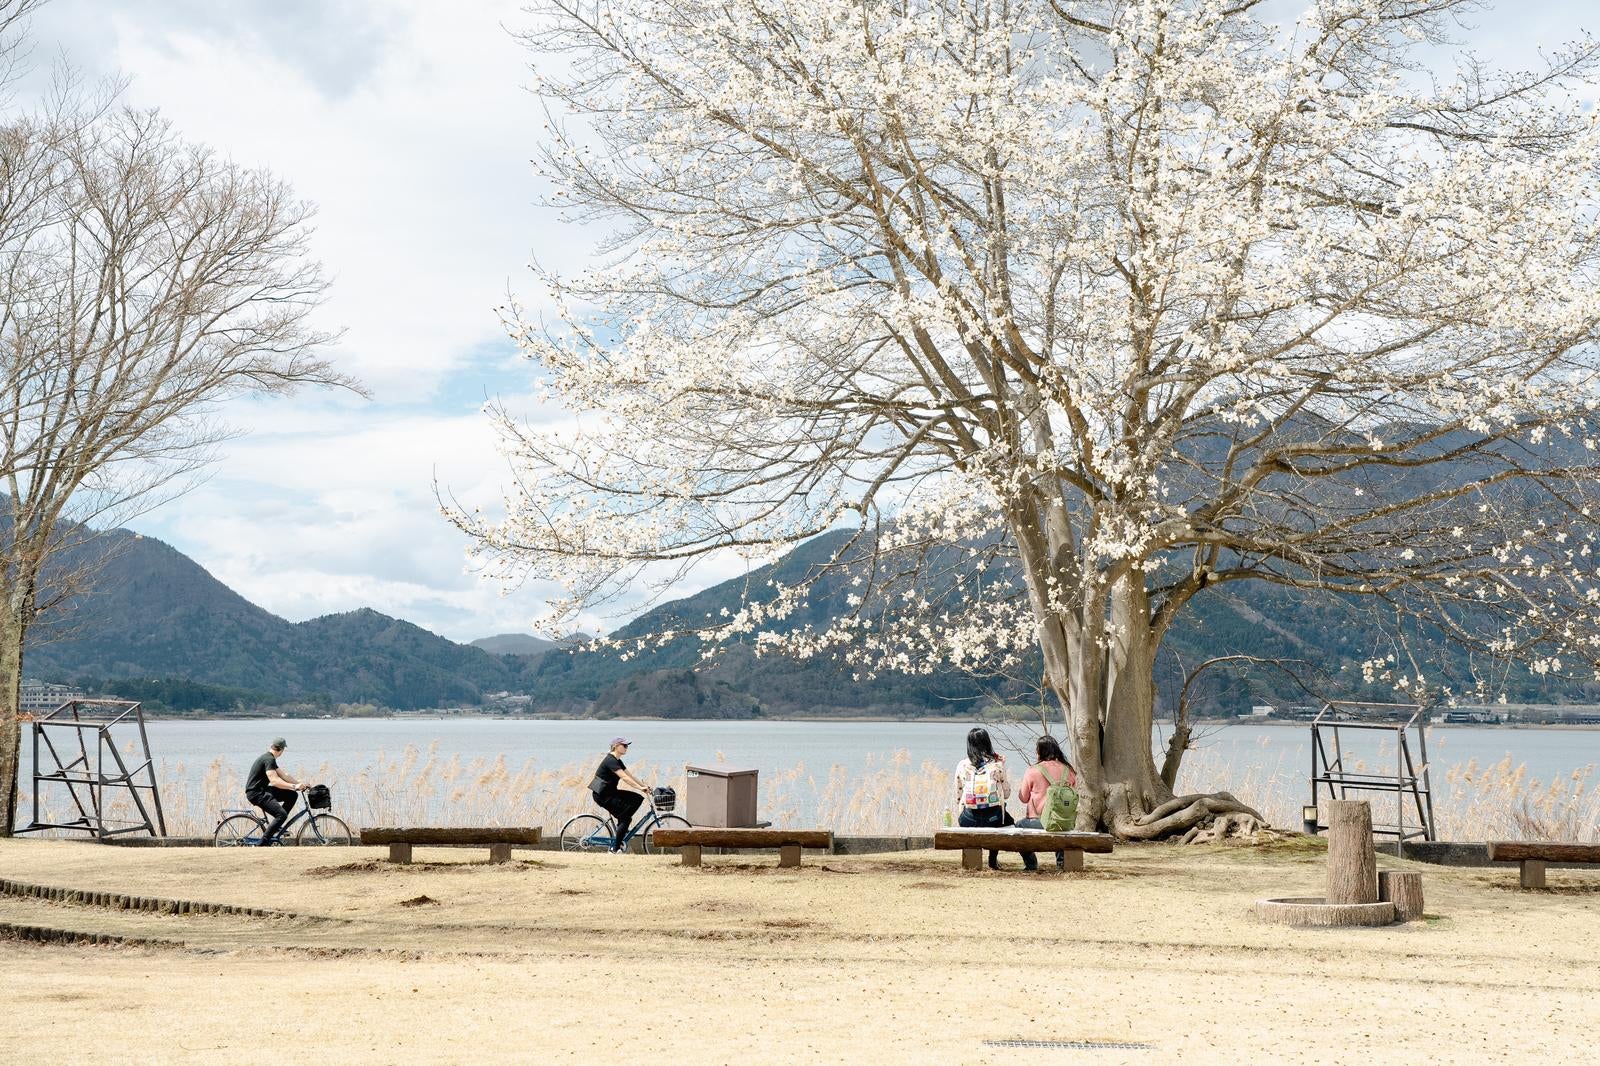 「湖畔のベンチに腰かけて花見中」の写真